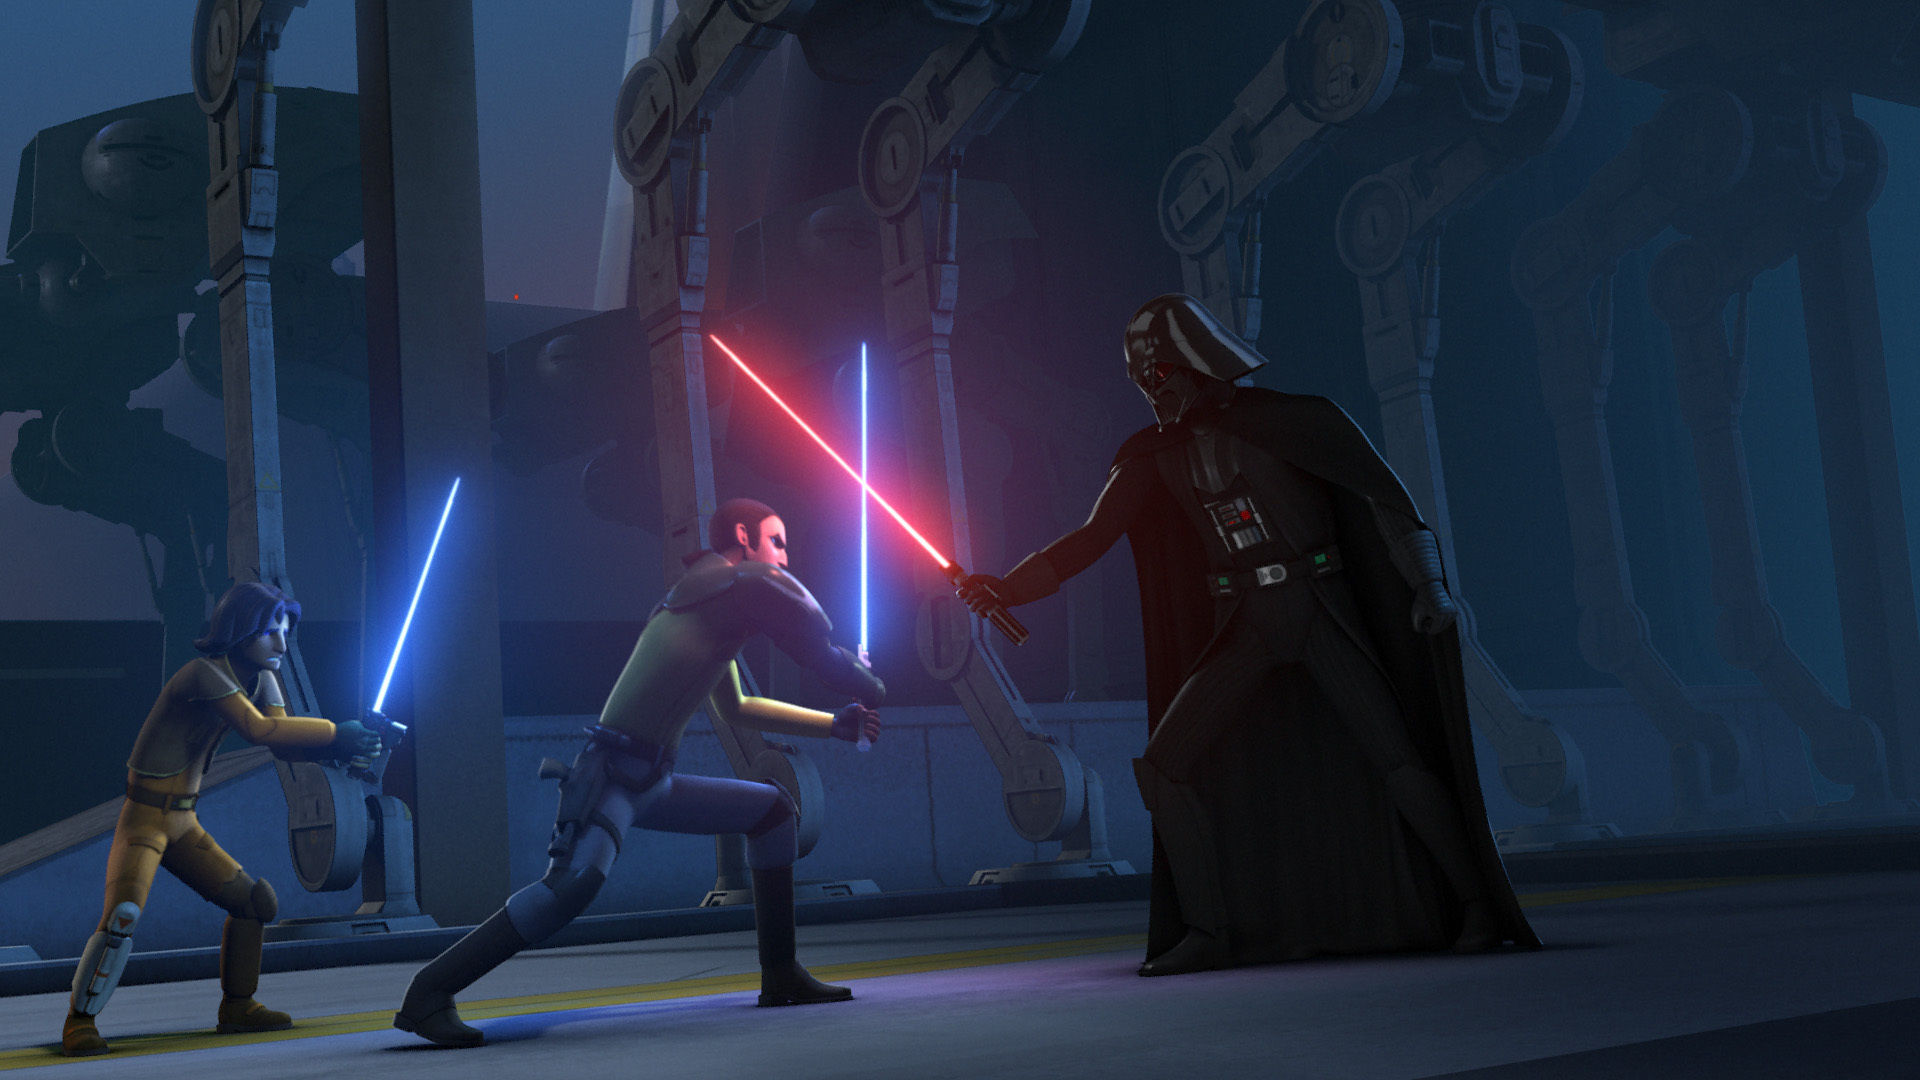  Star Wars Rebels Electronic Duel Kanan Jarrus : Toys & Games